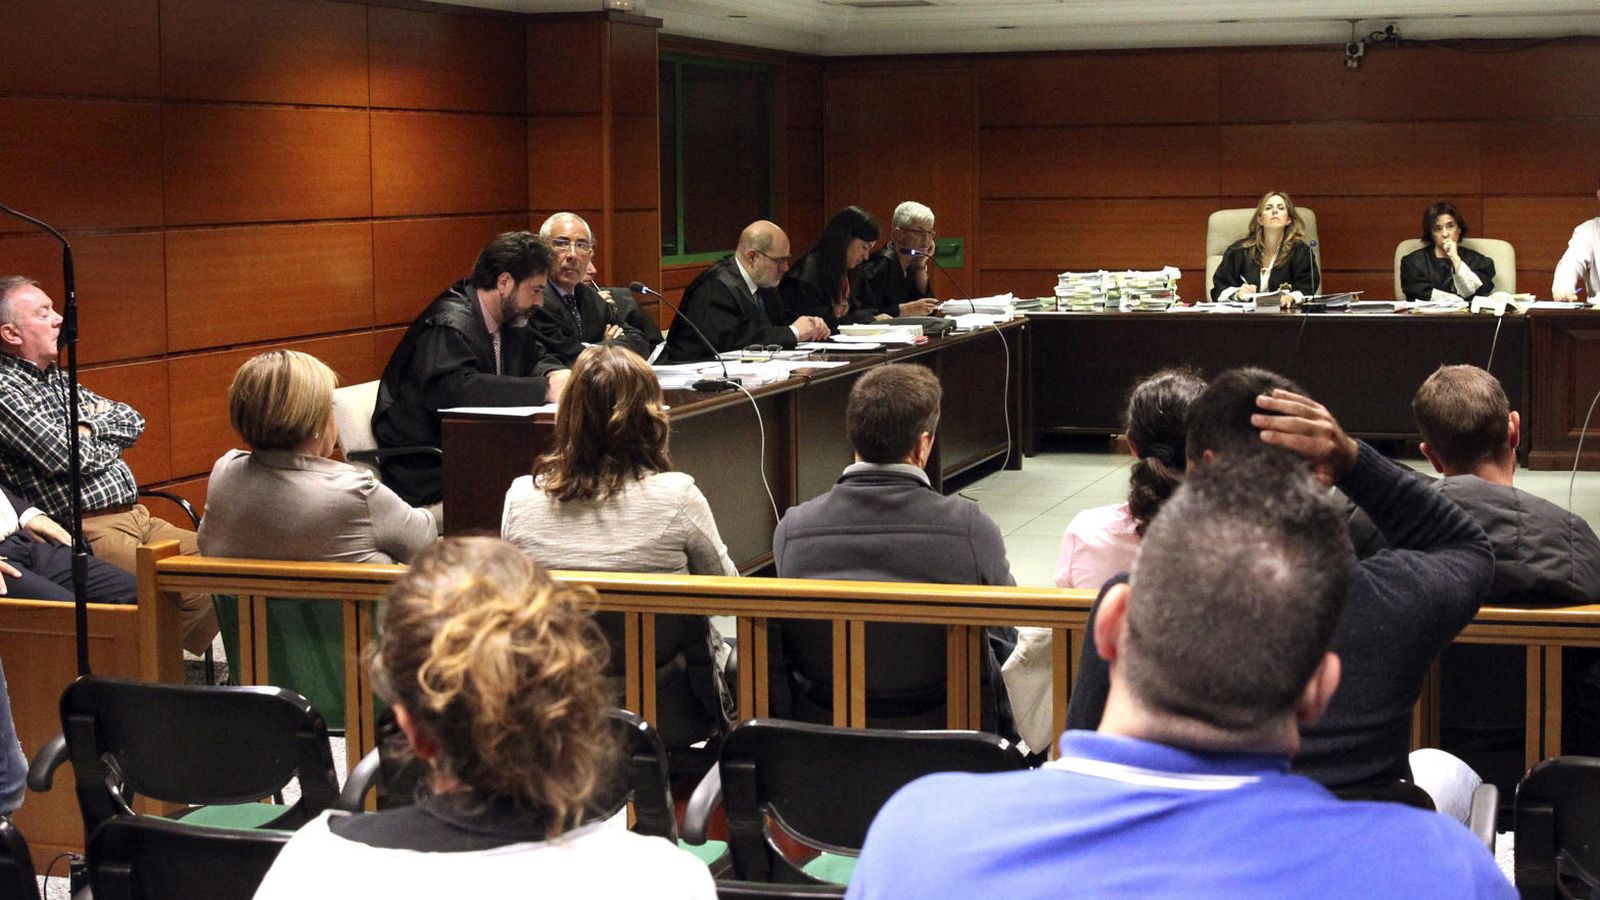 Foto: El remero Oscar Viudez, declara en la tercera jornada del juicio contra el presidente, el entrenador, el médico y la ATS del club de remo Urdaibai en 2010, junto a otras seis personas (EFE)